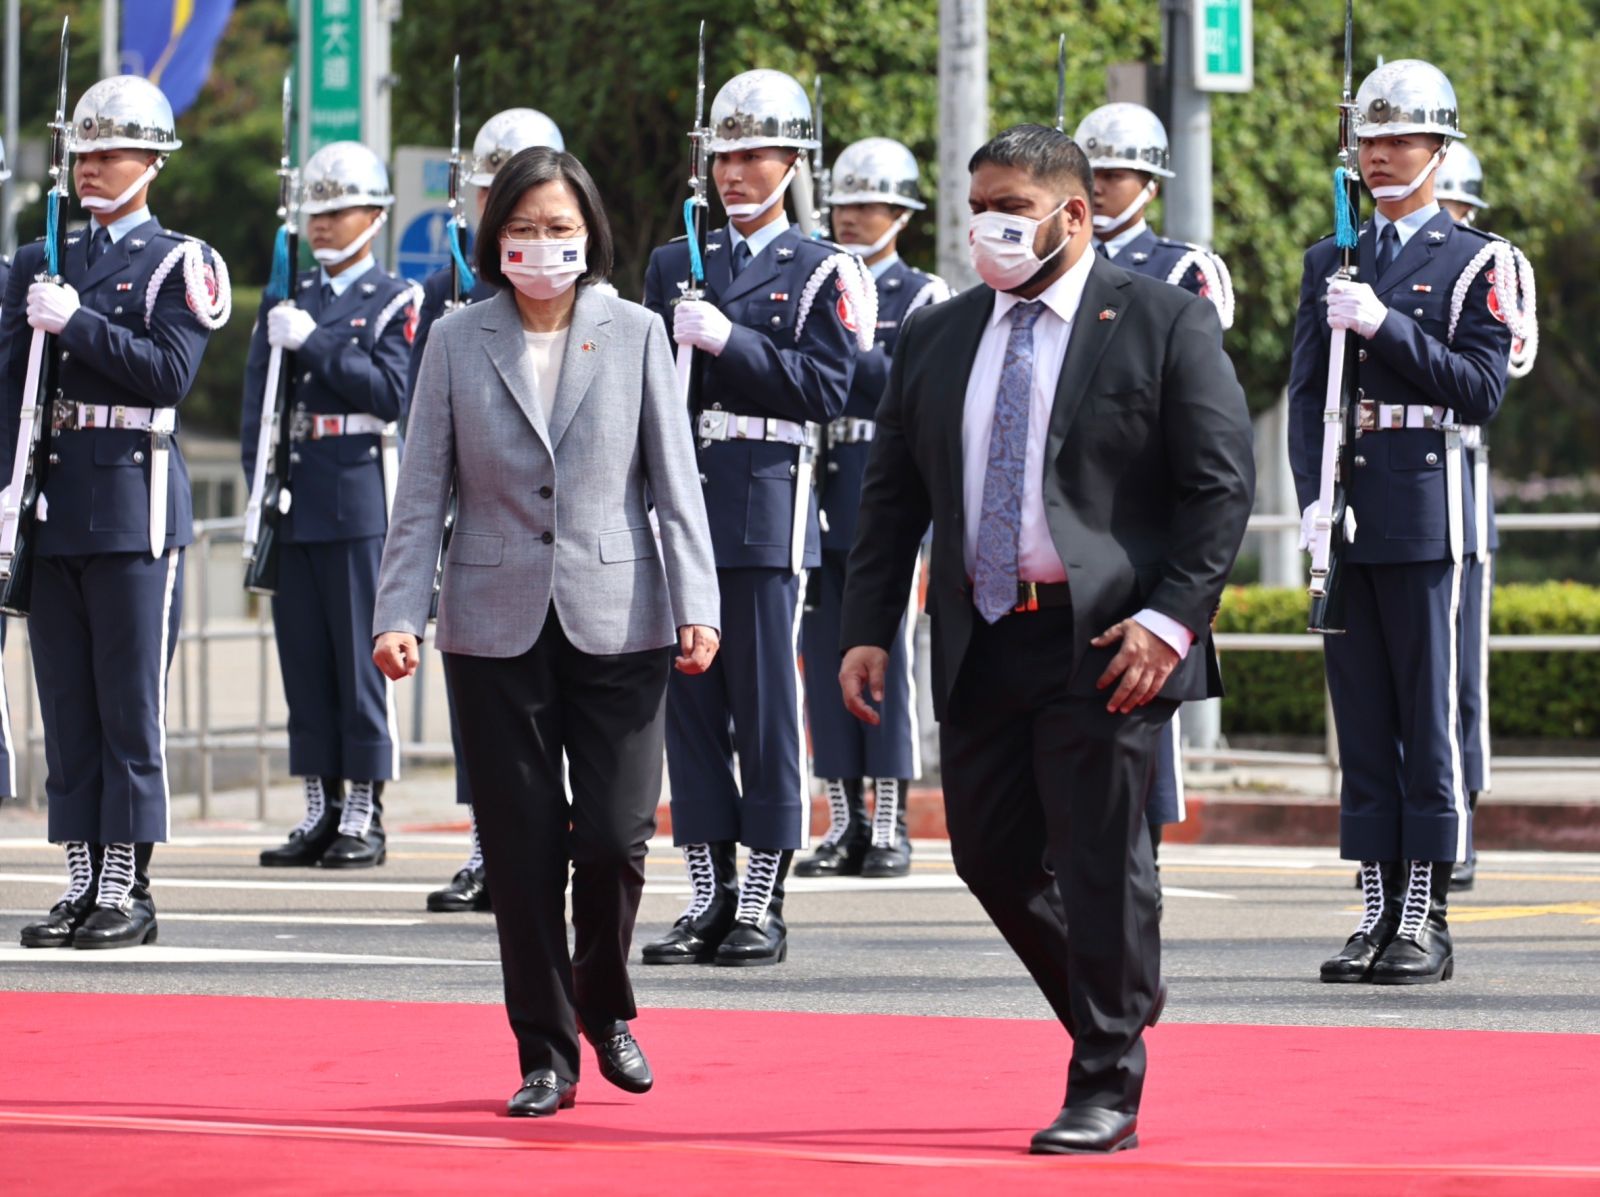  諾魯共和國總統昆洛斯昨率團抵達台灣開啟國是訪問，今接受總統蔡英文隆重軍禮歡迎。林啟弘攝